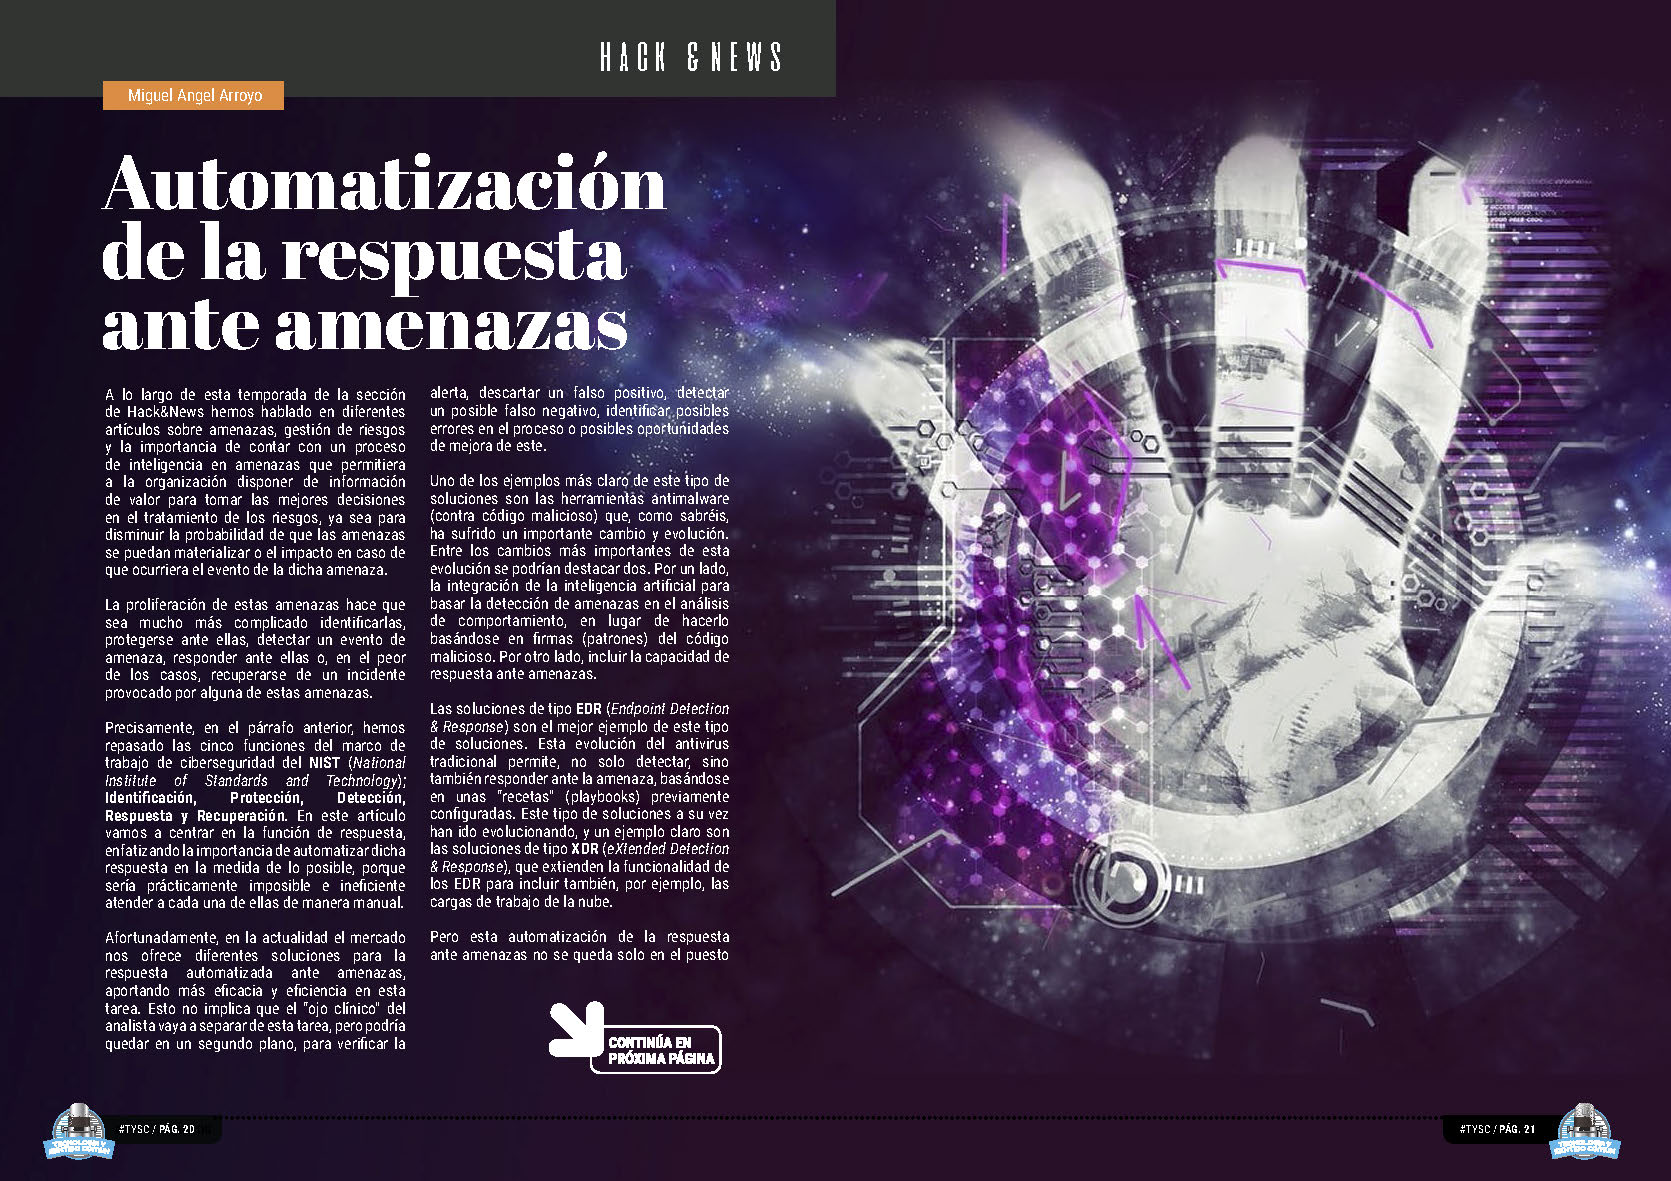 "Automatización de la respuesta ante amenazas" artículo de "Hack & News" de Tecnología y Sentido Común 2023 con Miguel Angel Arroyo